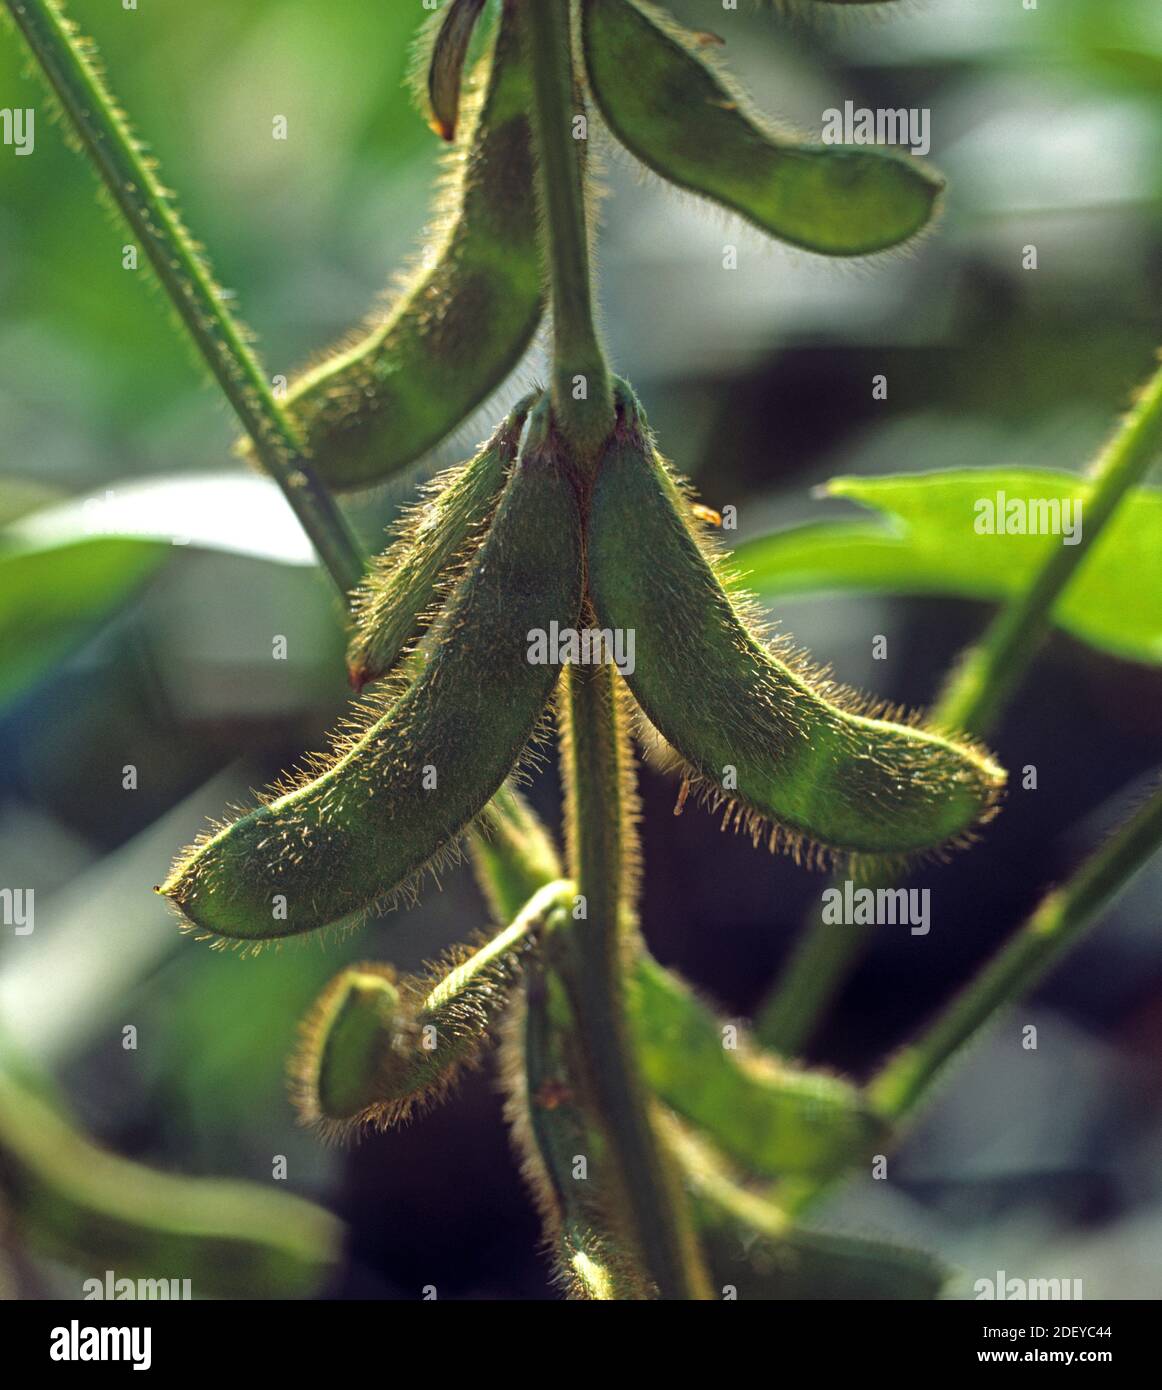 Gousses de soja vert mûr (Glycine max) mûres dont les poils sont rétroéclairés par la lumière du soleil dans une culture, Thaïlande Banque D'Images